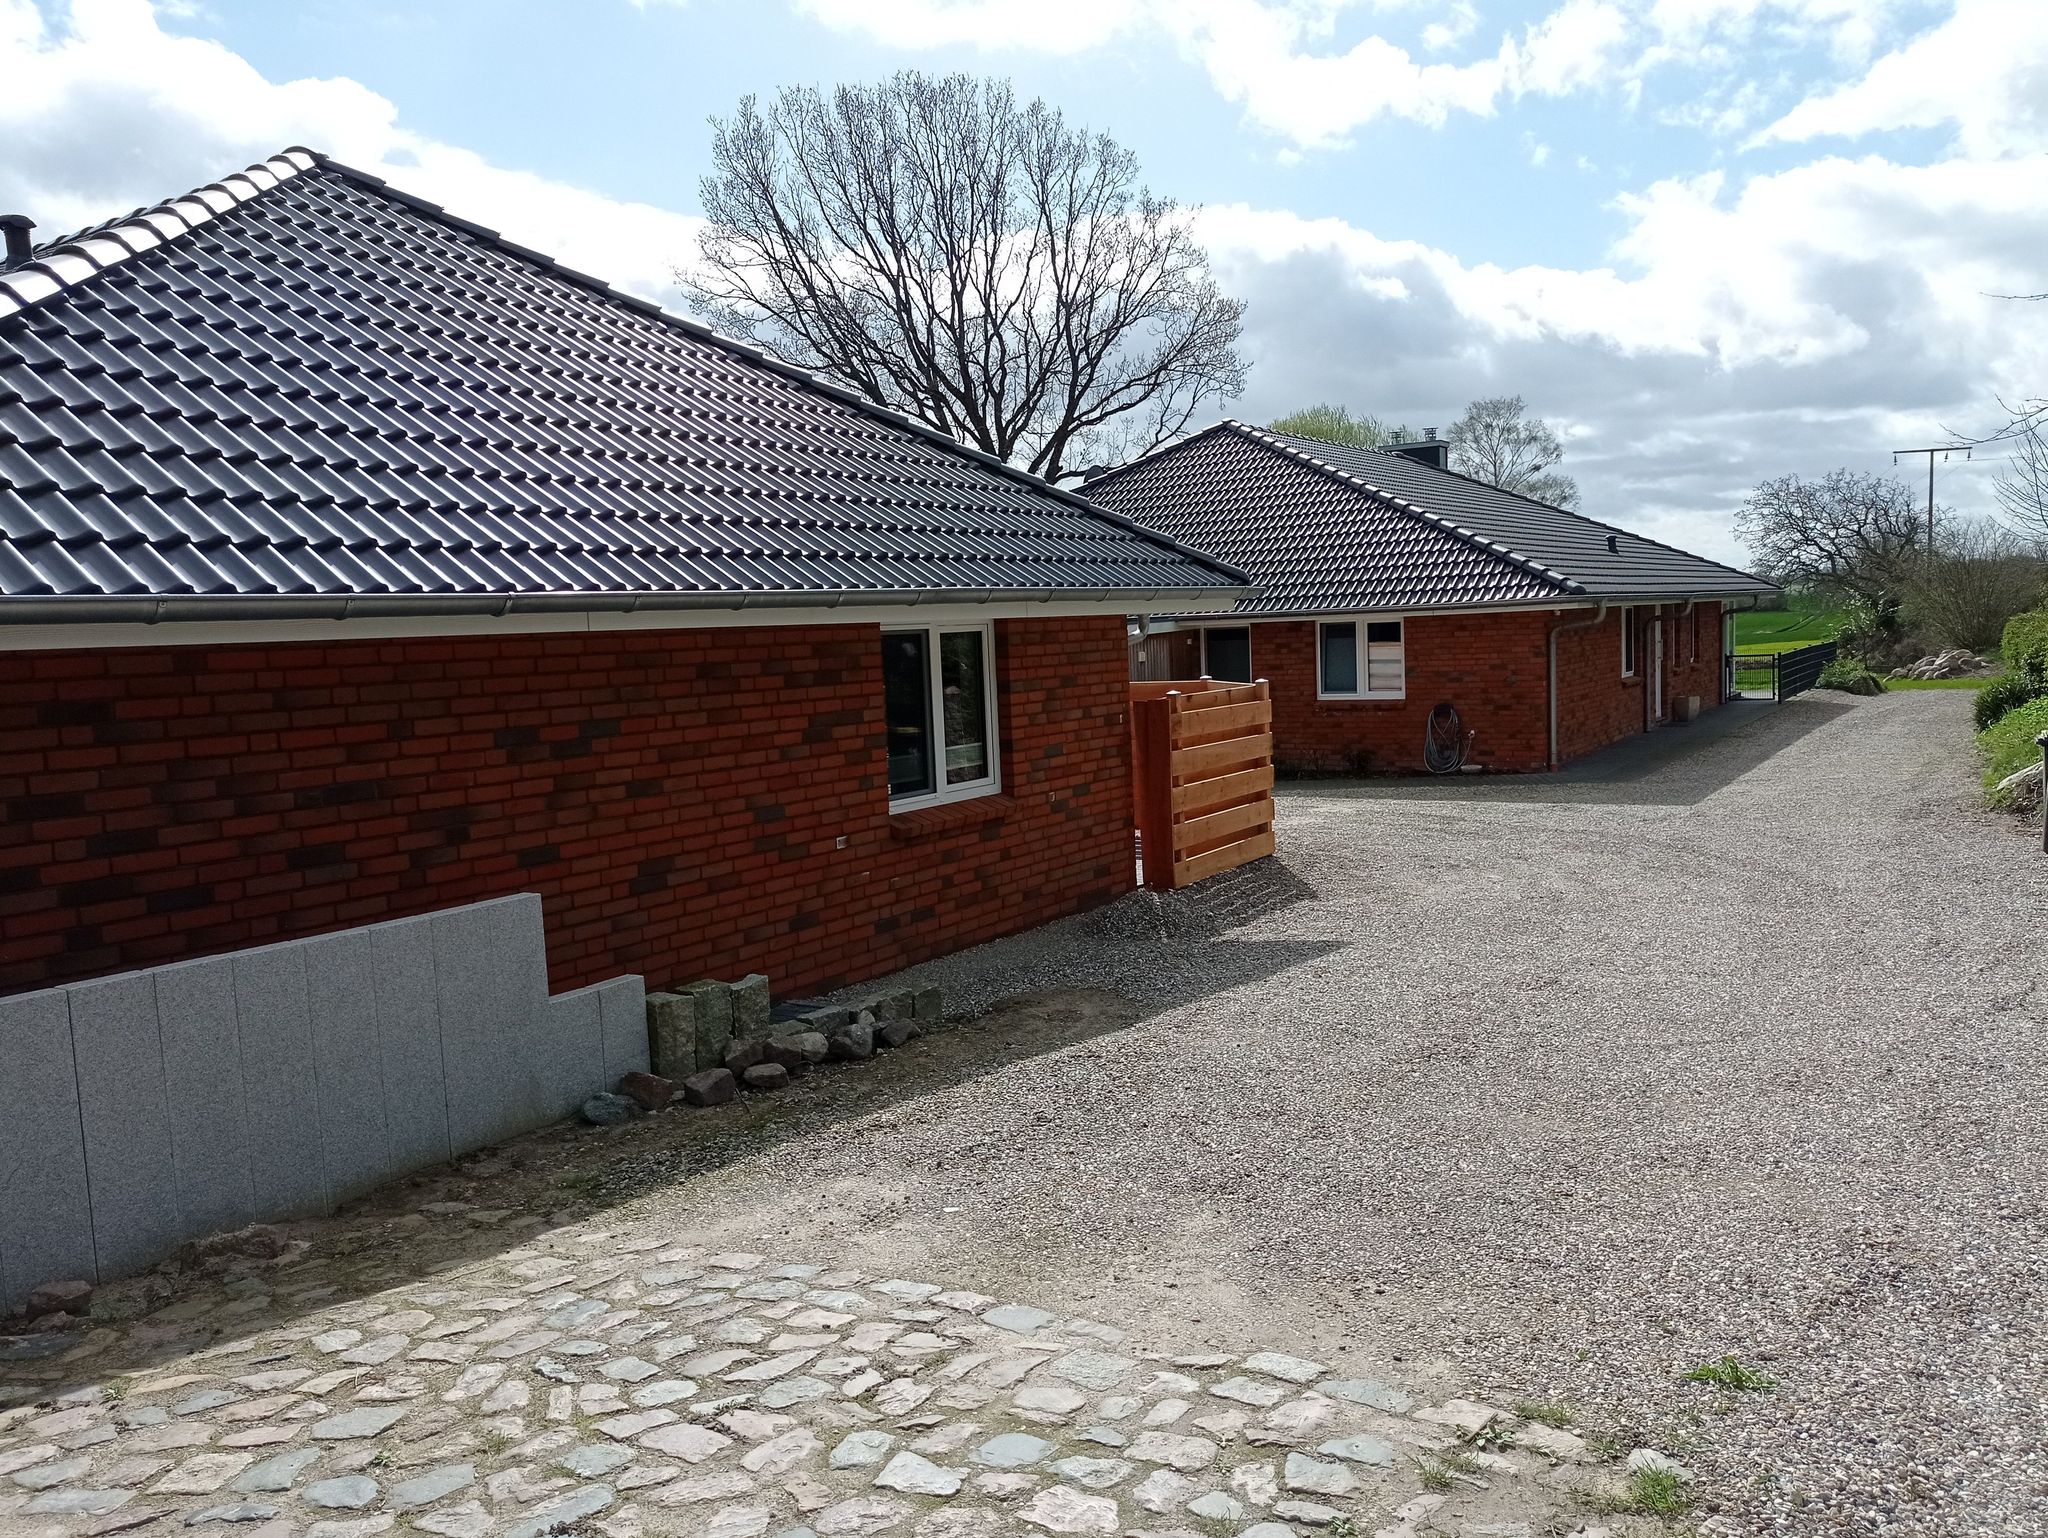 Bestes Ferienhaus Ostsee - 4 Personen - 2 Schlafzimmer - Ferienwohnung - nähe Strand - günstig - ökologisch - privat